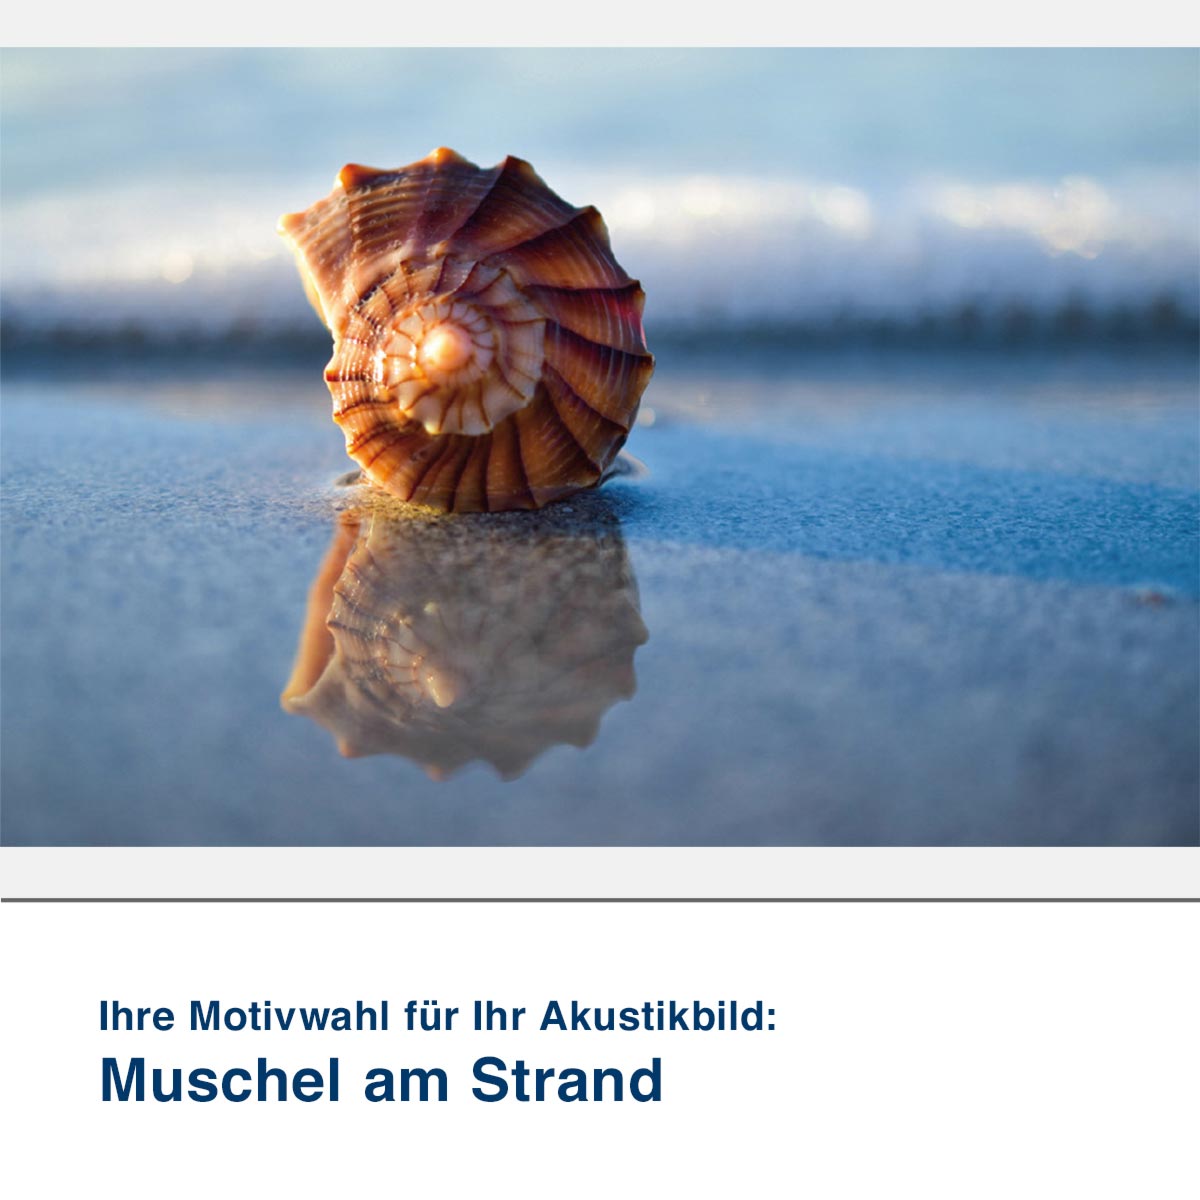 Akustikbild Motiv Muschel am Strand